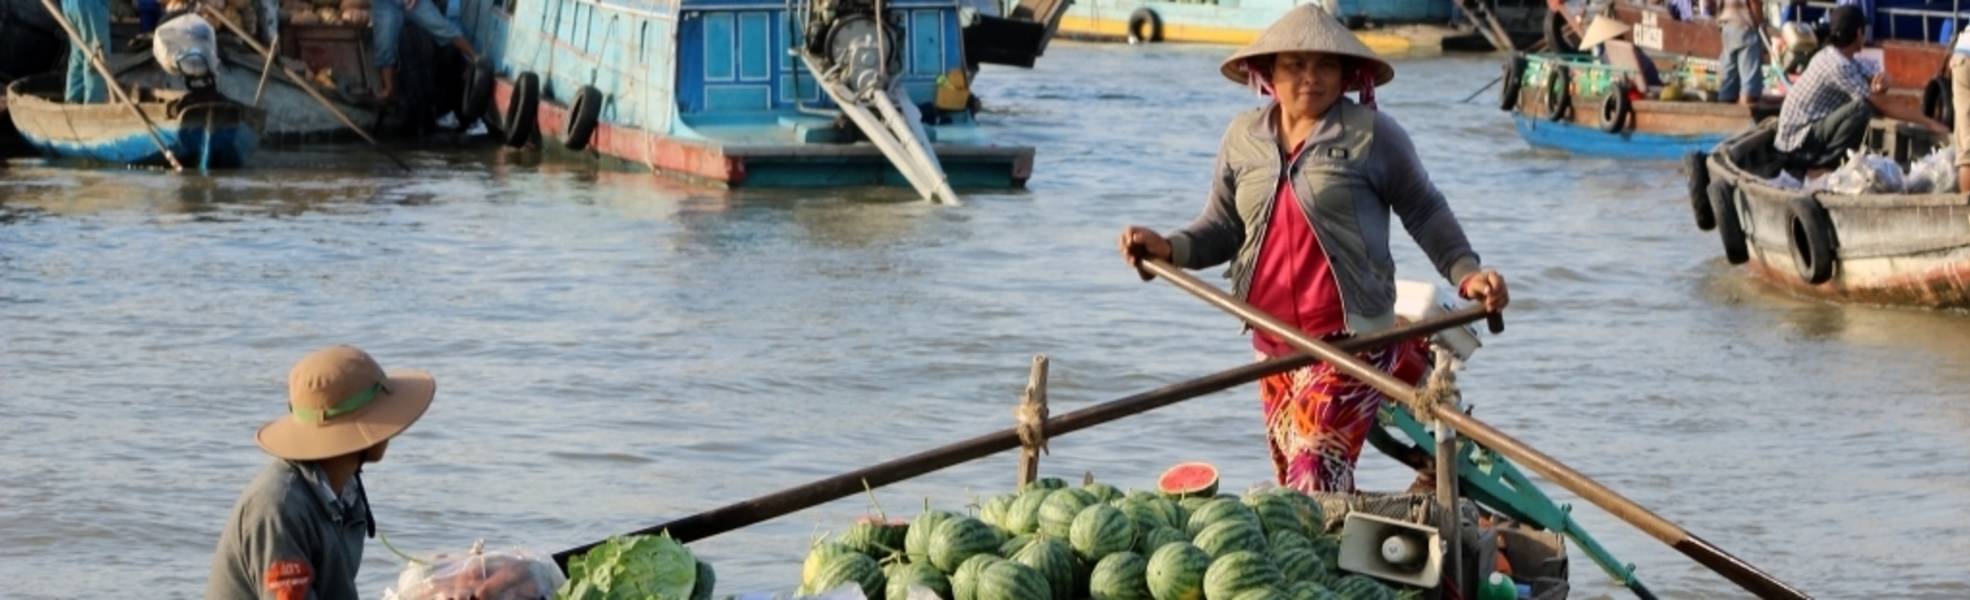 Einheimische Händler:innen in Asien